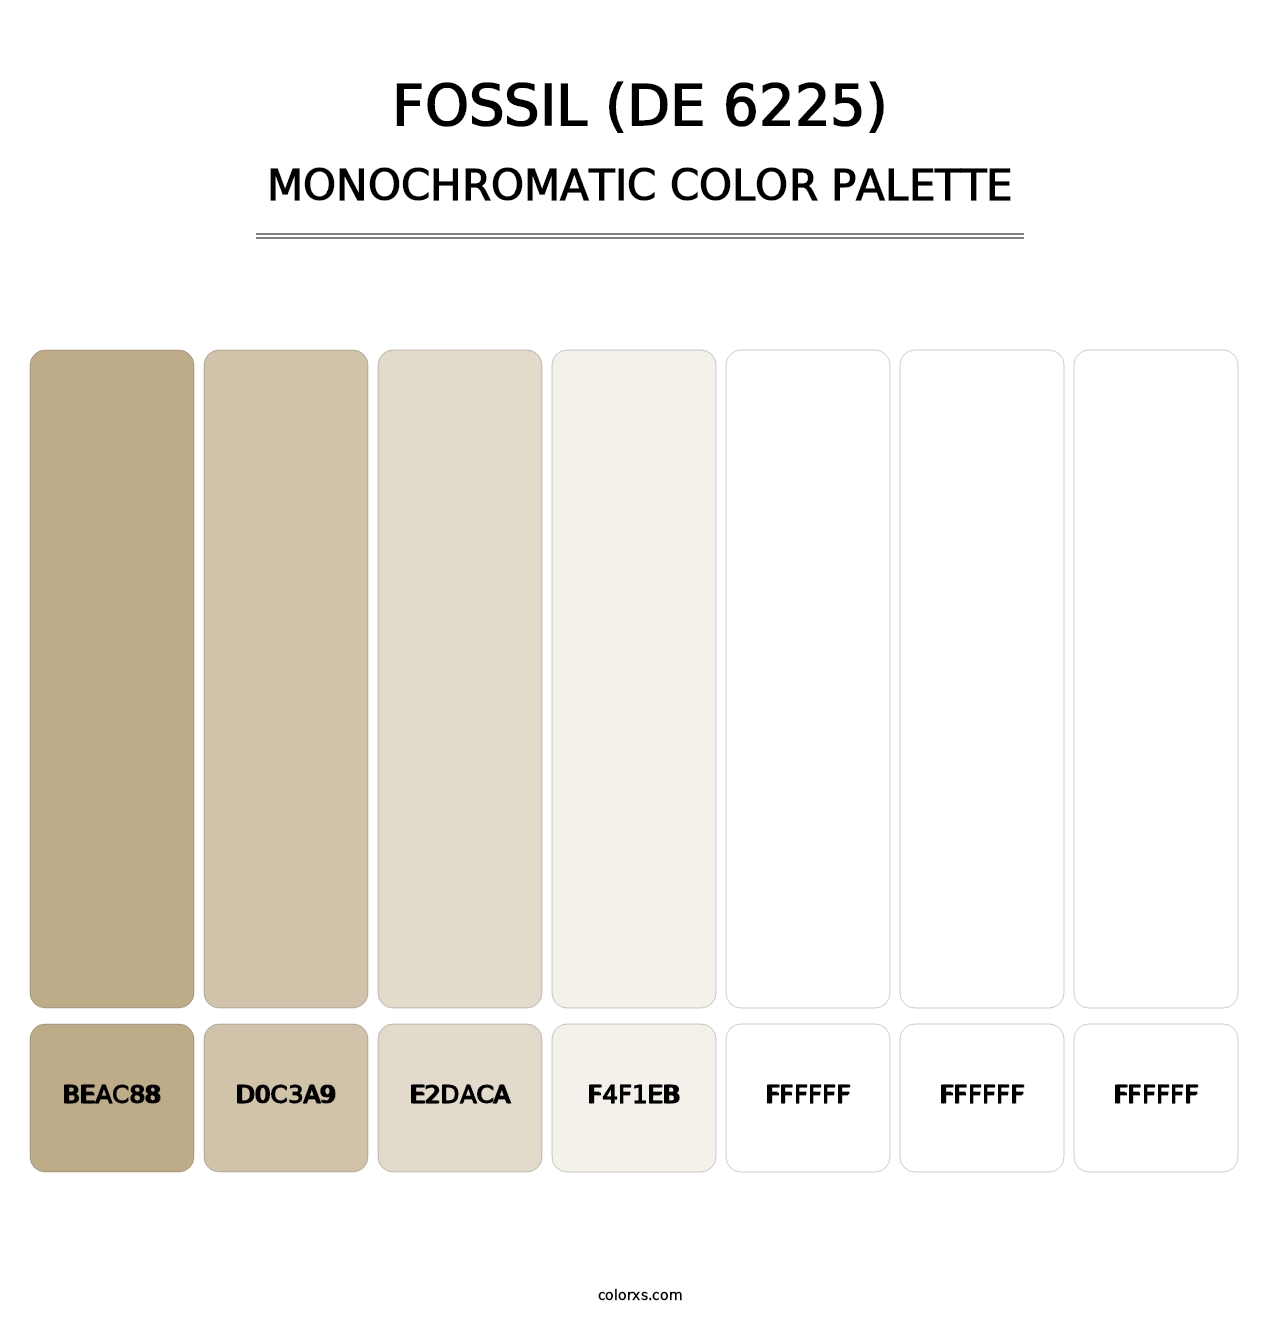 Fossil (DE 6225) - Monochromatic Color Palette